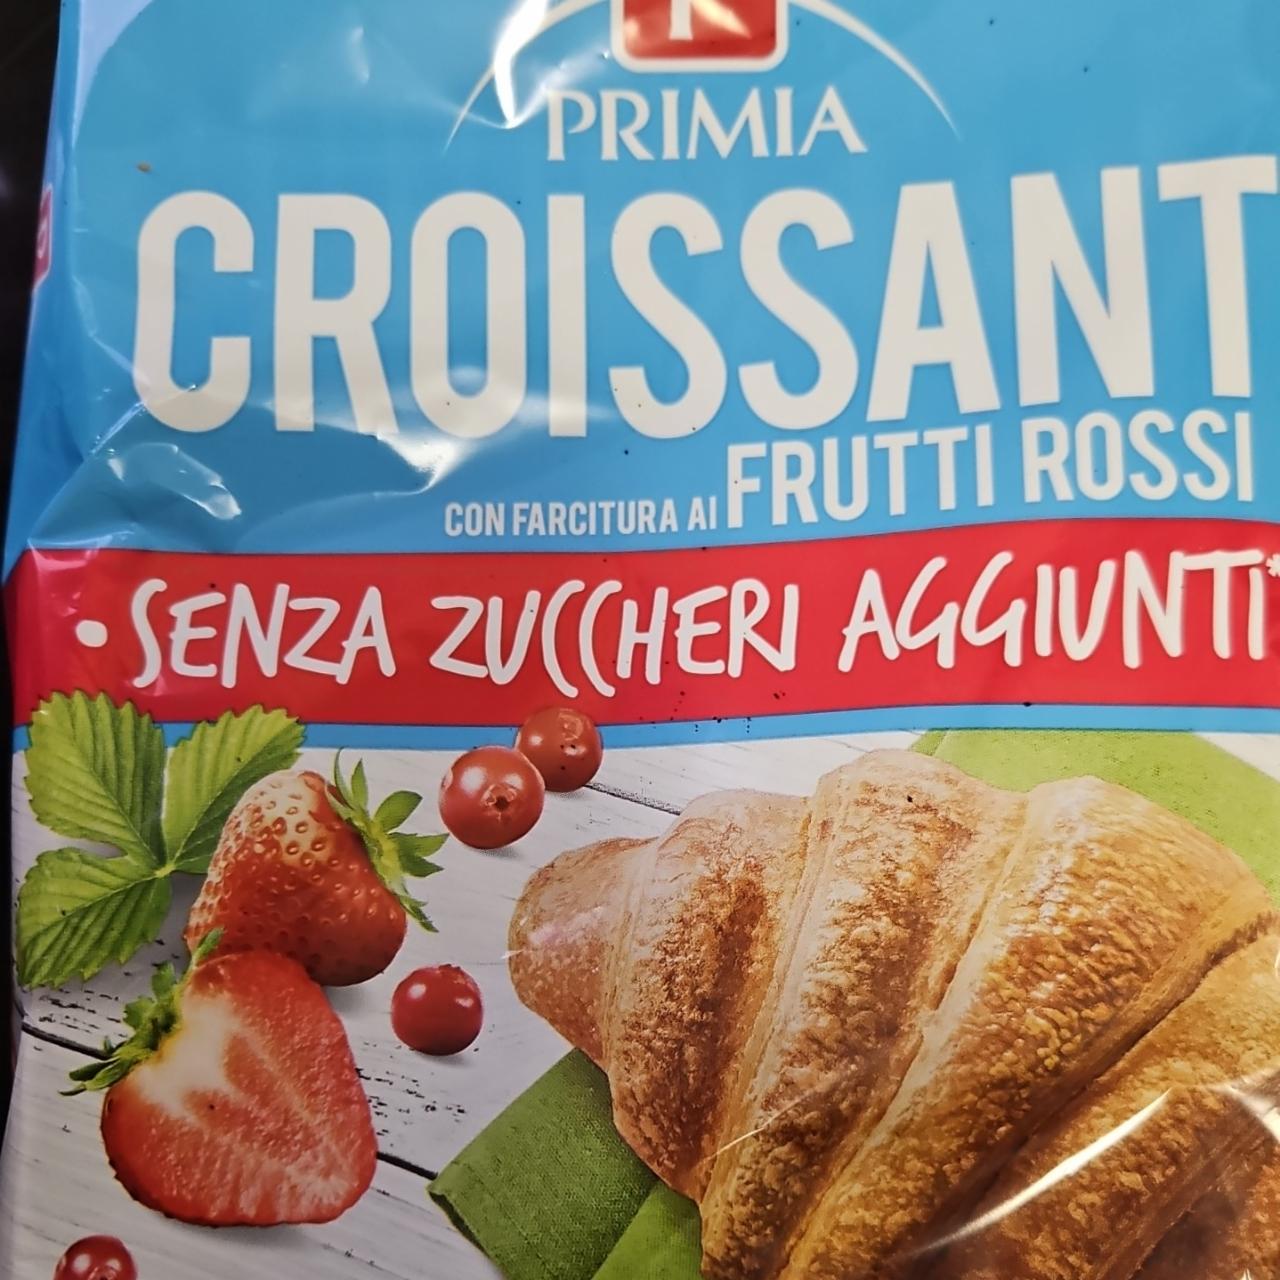 Fotografie - Croissant Frutti Rossi senza zuccheri aggiunti Primia